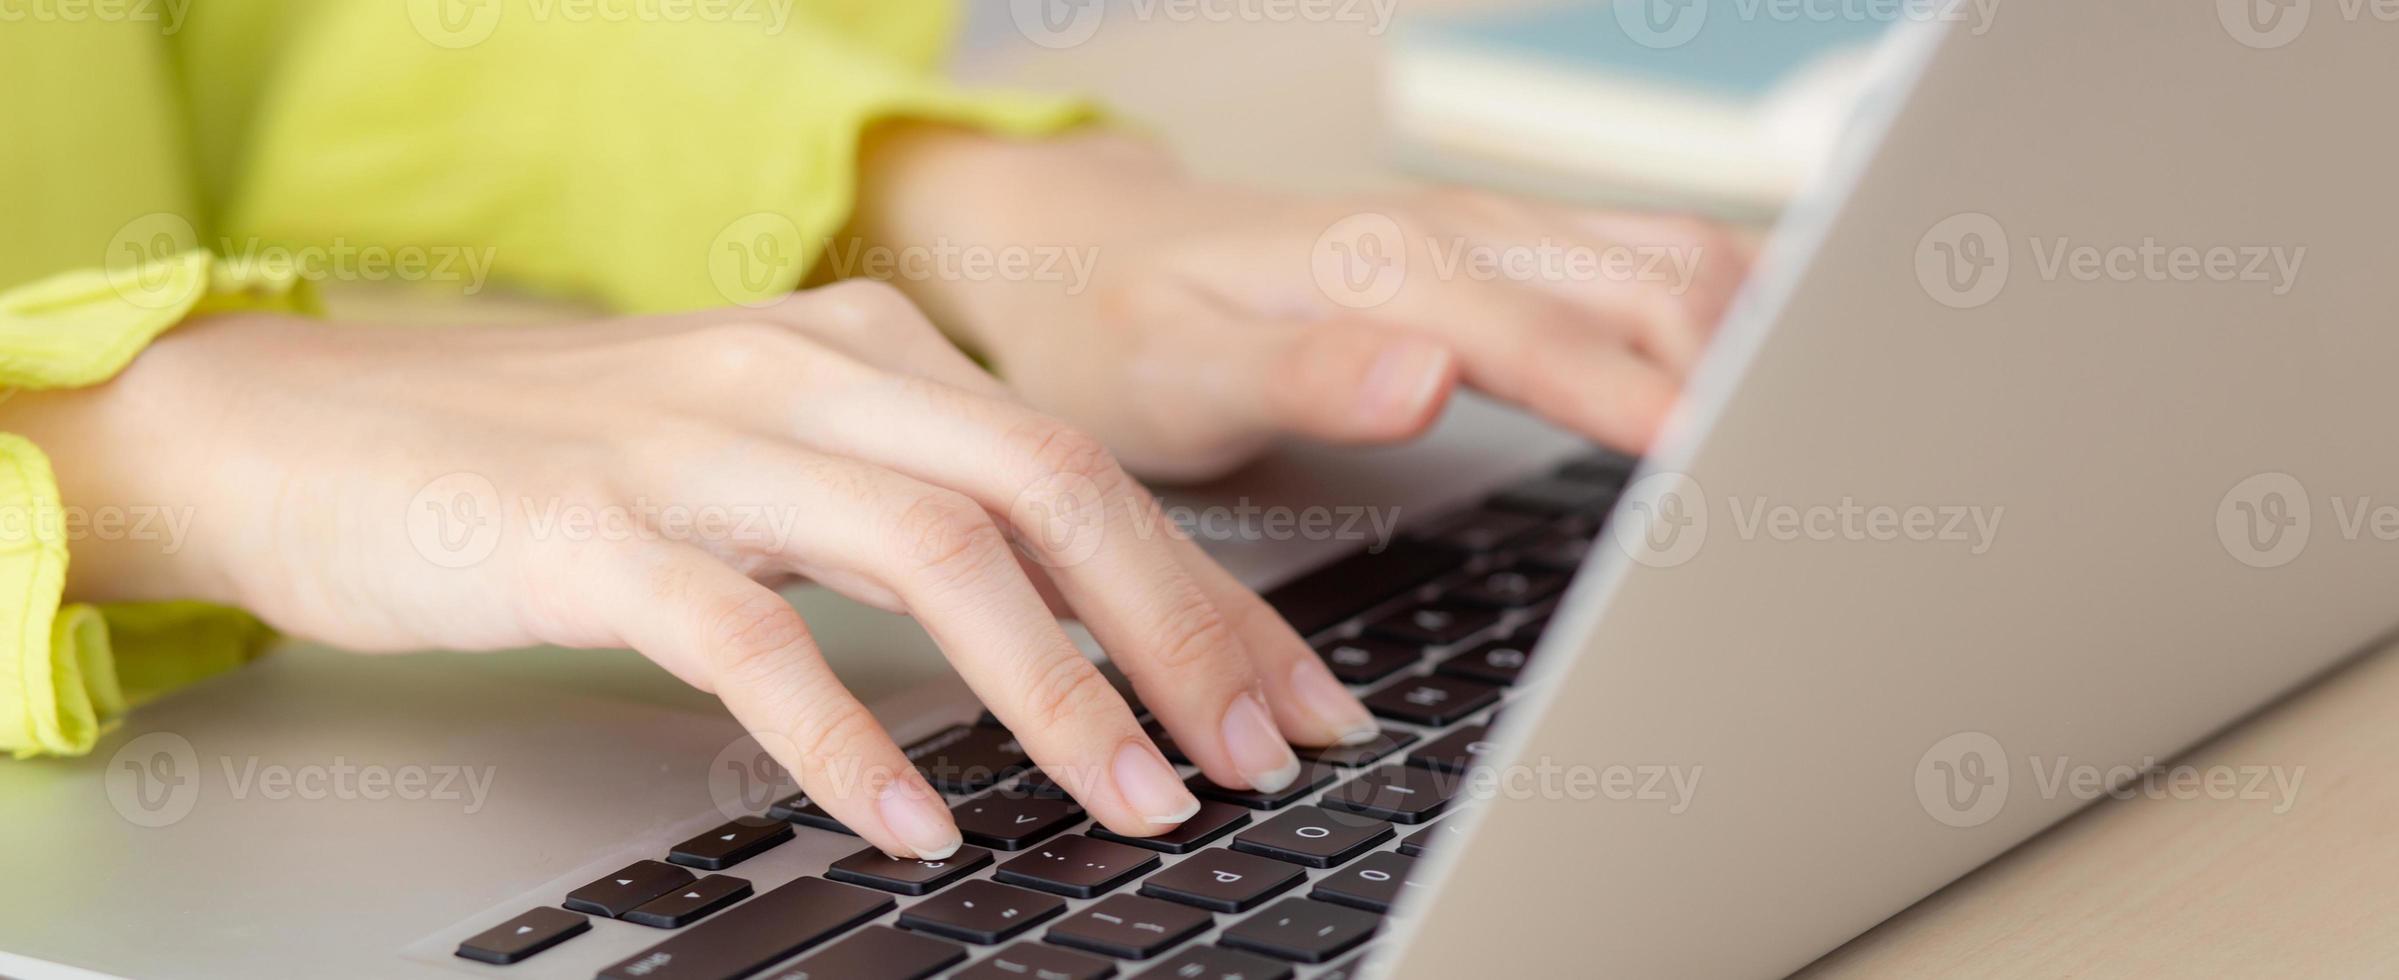 närbild av den unga asiatiska affärskvinnan för hand som arbetar på bärbar dator på skrivbordet hemma kontor, frilans som ser och skriver på anteckningsboken på bordet, kvinnan som studerar online, affärs- och utbildningskoncept. foto